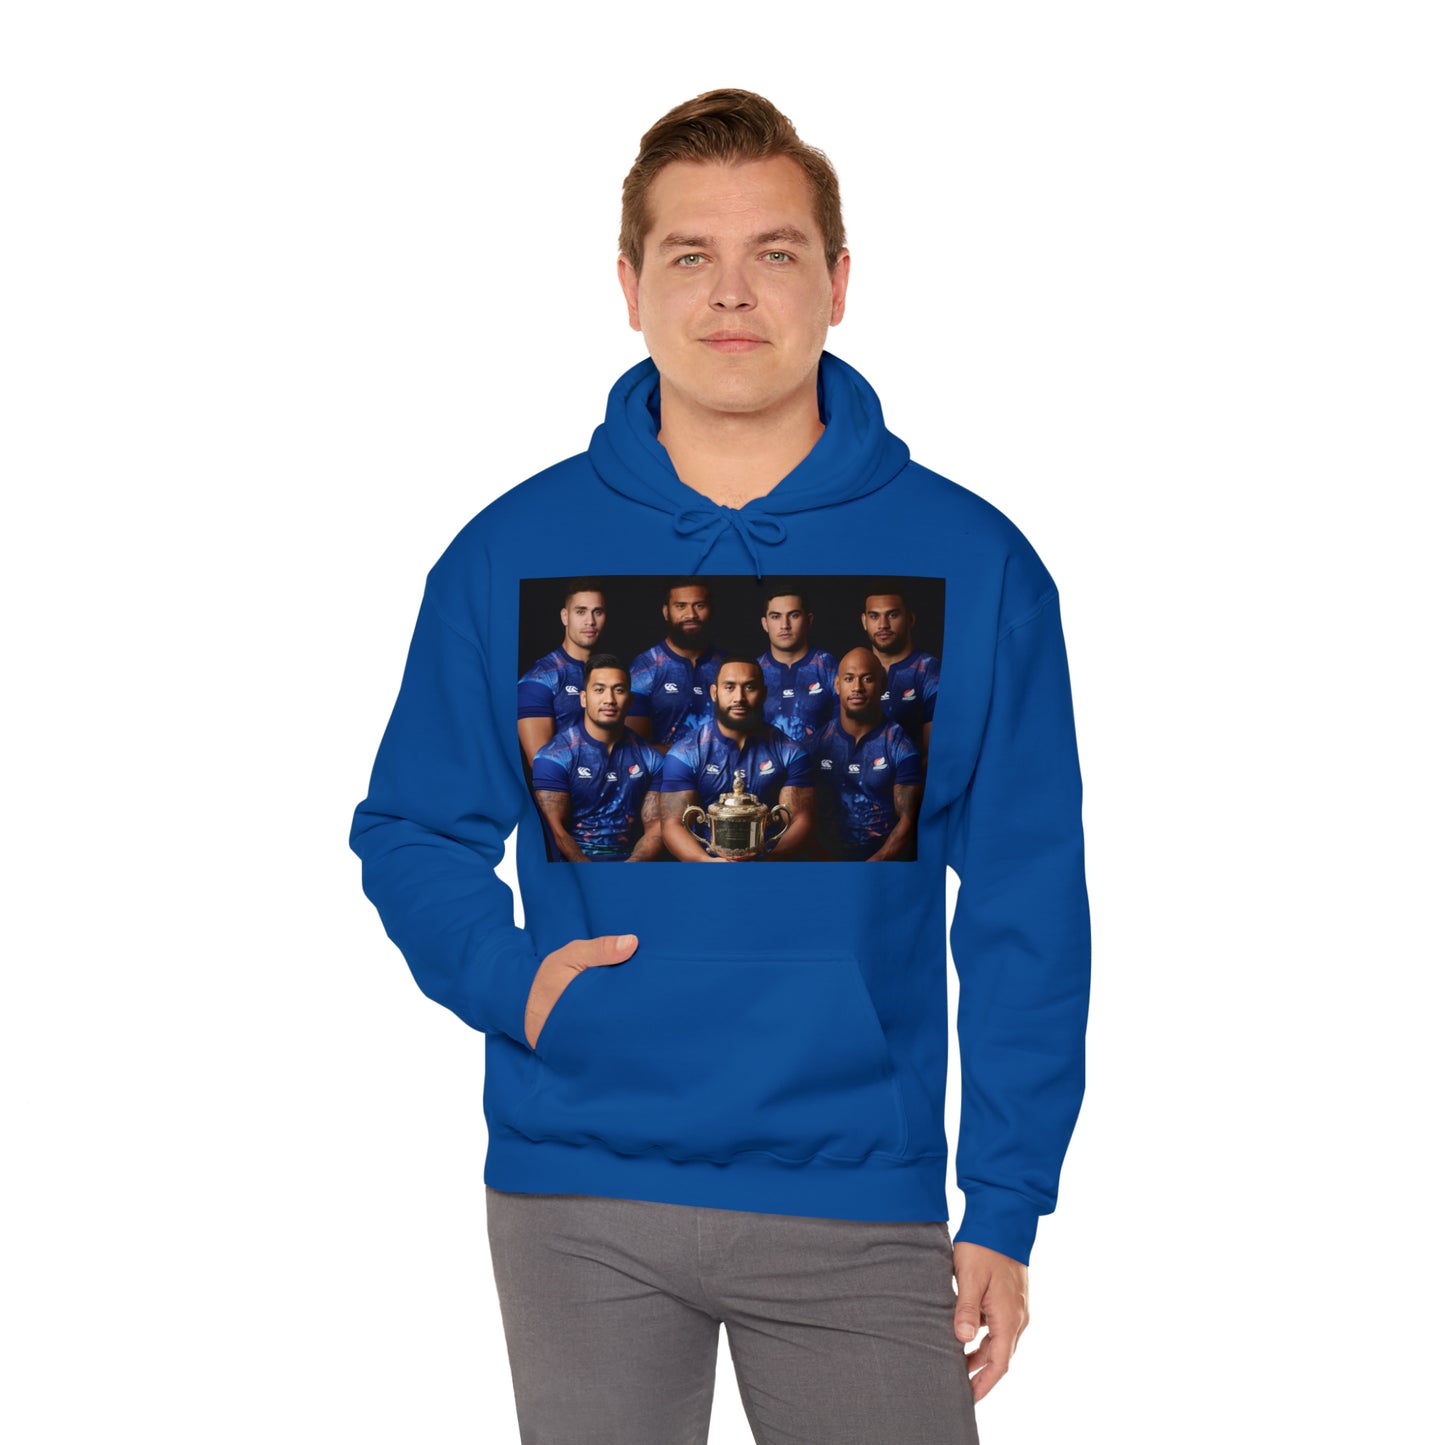 Samoa RWC Photoshoot - dark hoodies